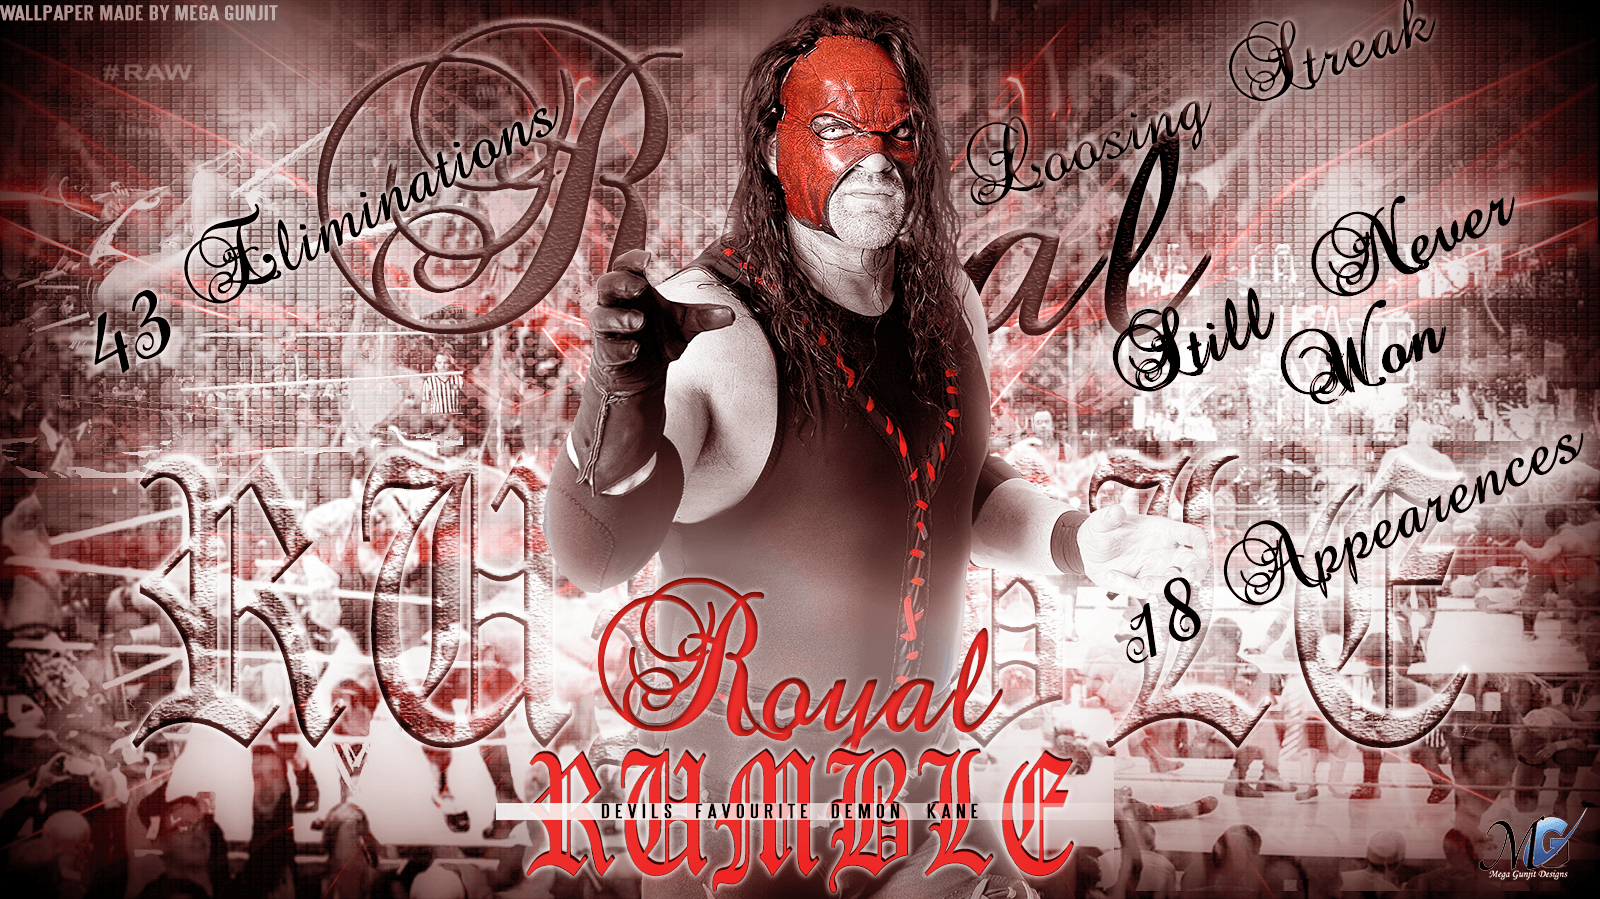 WWE HD Wallpaper Royal Rumble Tribute 2